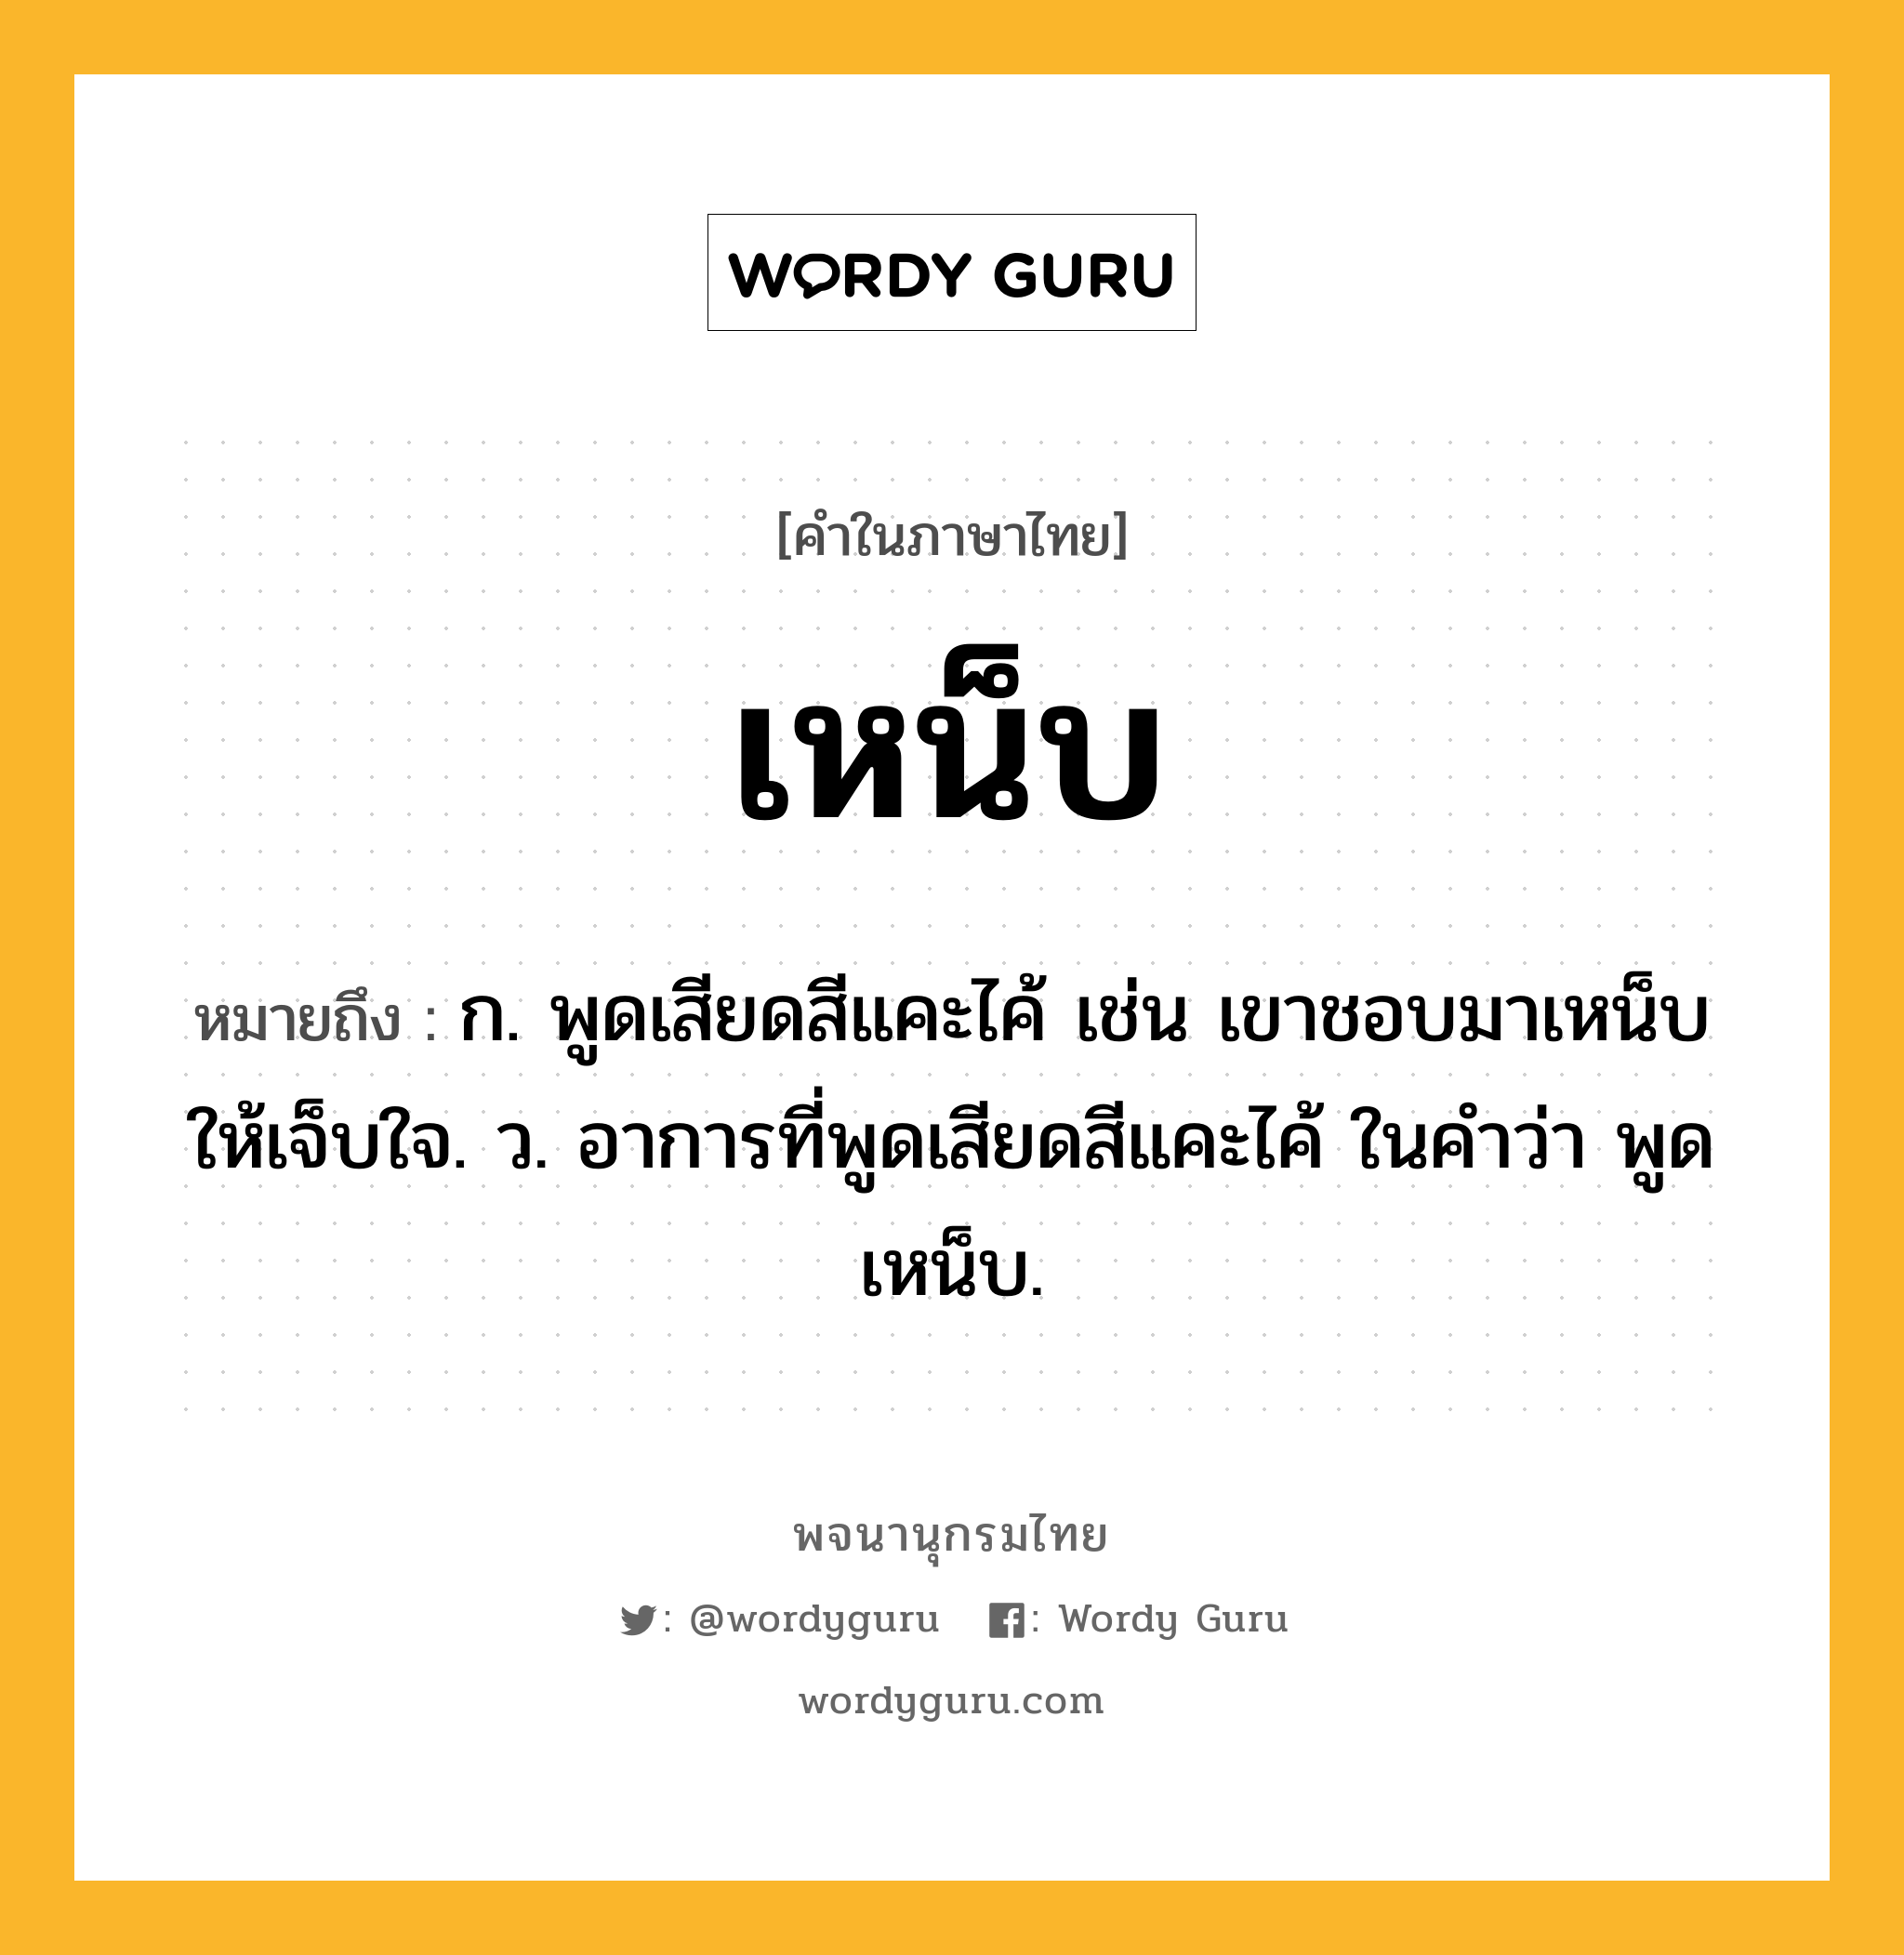 เหน็บ ความหมาย หมายถึงอะไร?, คำในภาษาไทย เหน็บ หมายถึง ก. พูดเสียดสีแคะไค้ เช่น เขาชอบมาเหน็บให้เจ็บใจ. ว. อาการที่พูดเสียดสีแคะไค้ ในคำว่า พูดเหน็บ.